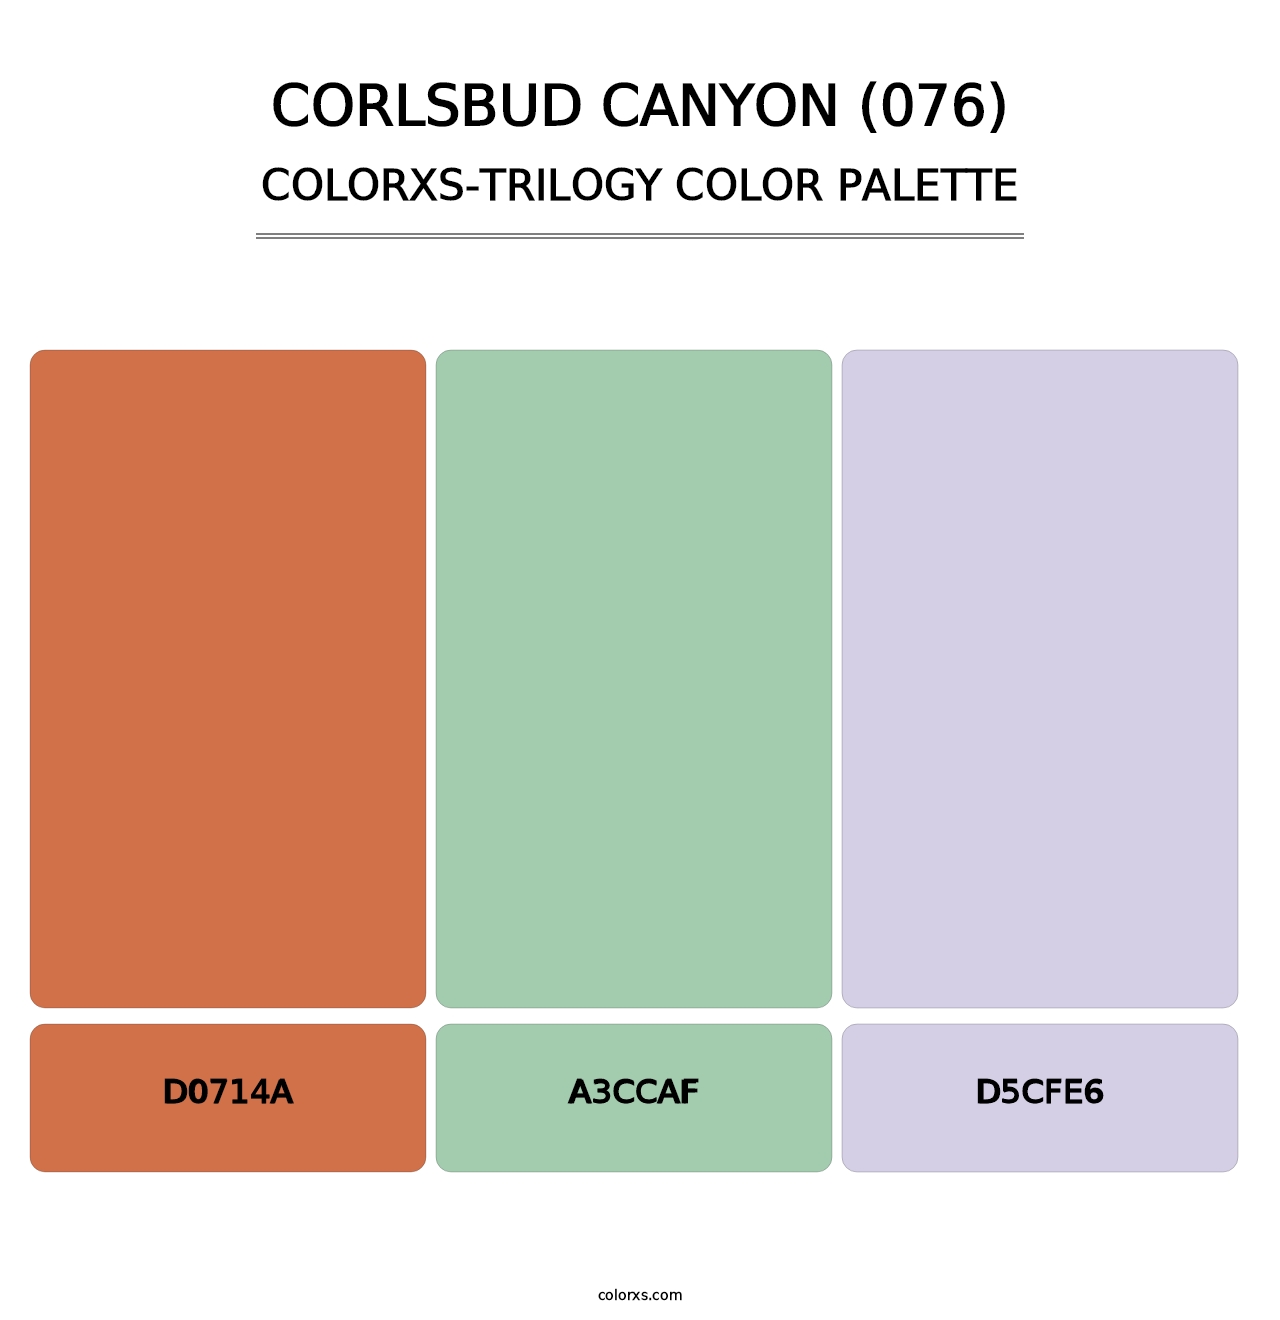 Corlsbud Canyon (076) - Colorxs Trilogy Palette